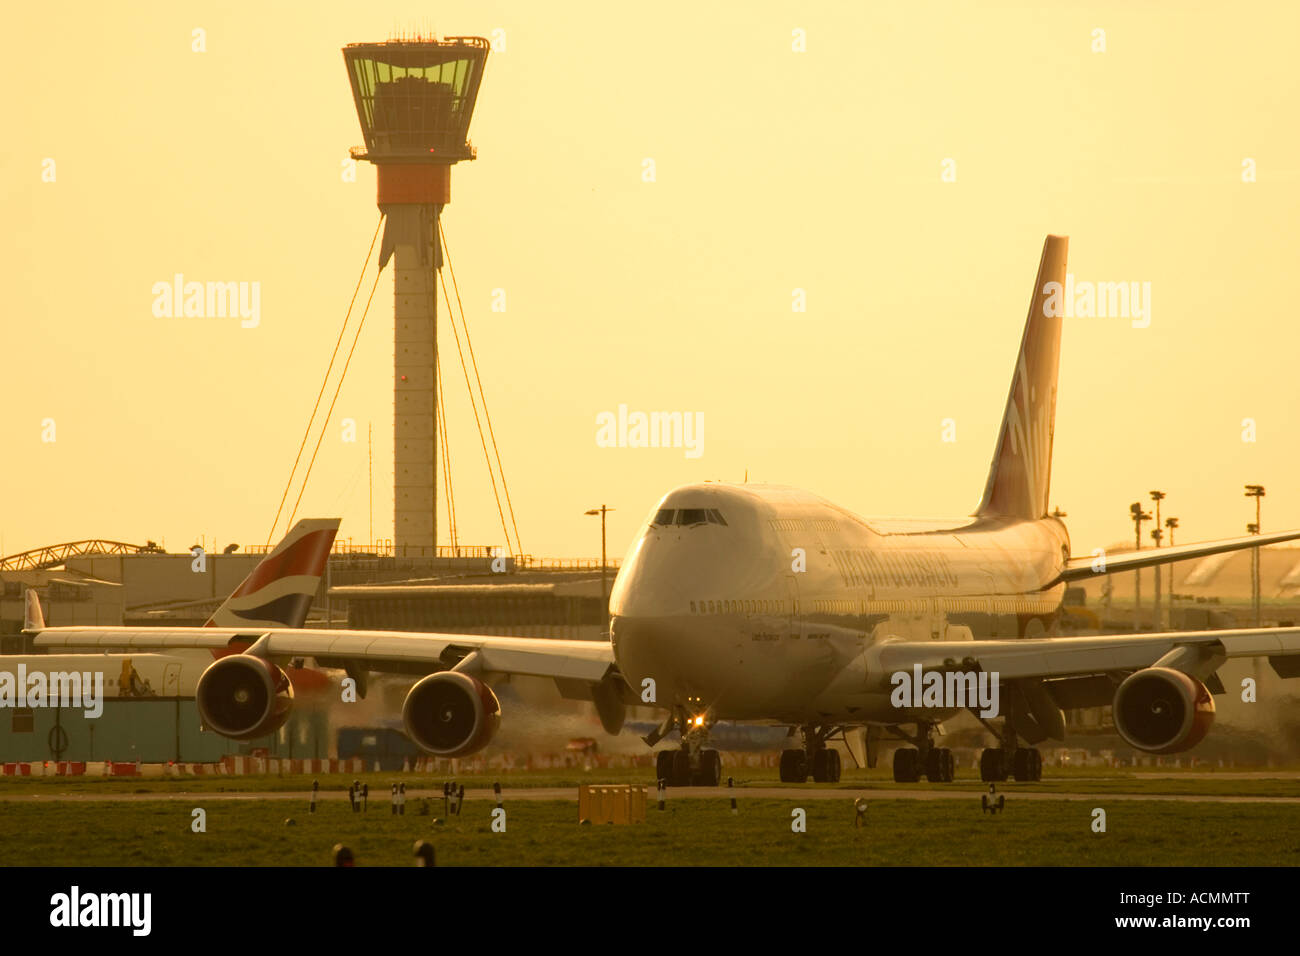 Avion de ligne et de nouvelles tour de contrôle de la circulation aérienne à l'aéroport Heathrow de Londres Angleterre Royaume-uni Banque D'Images